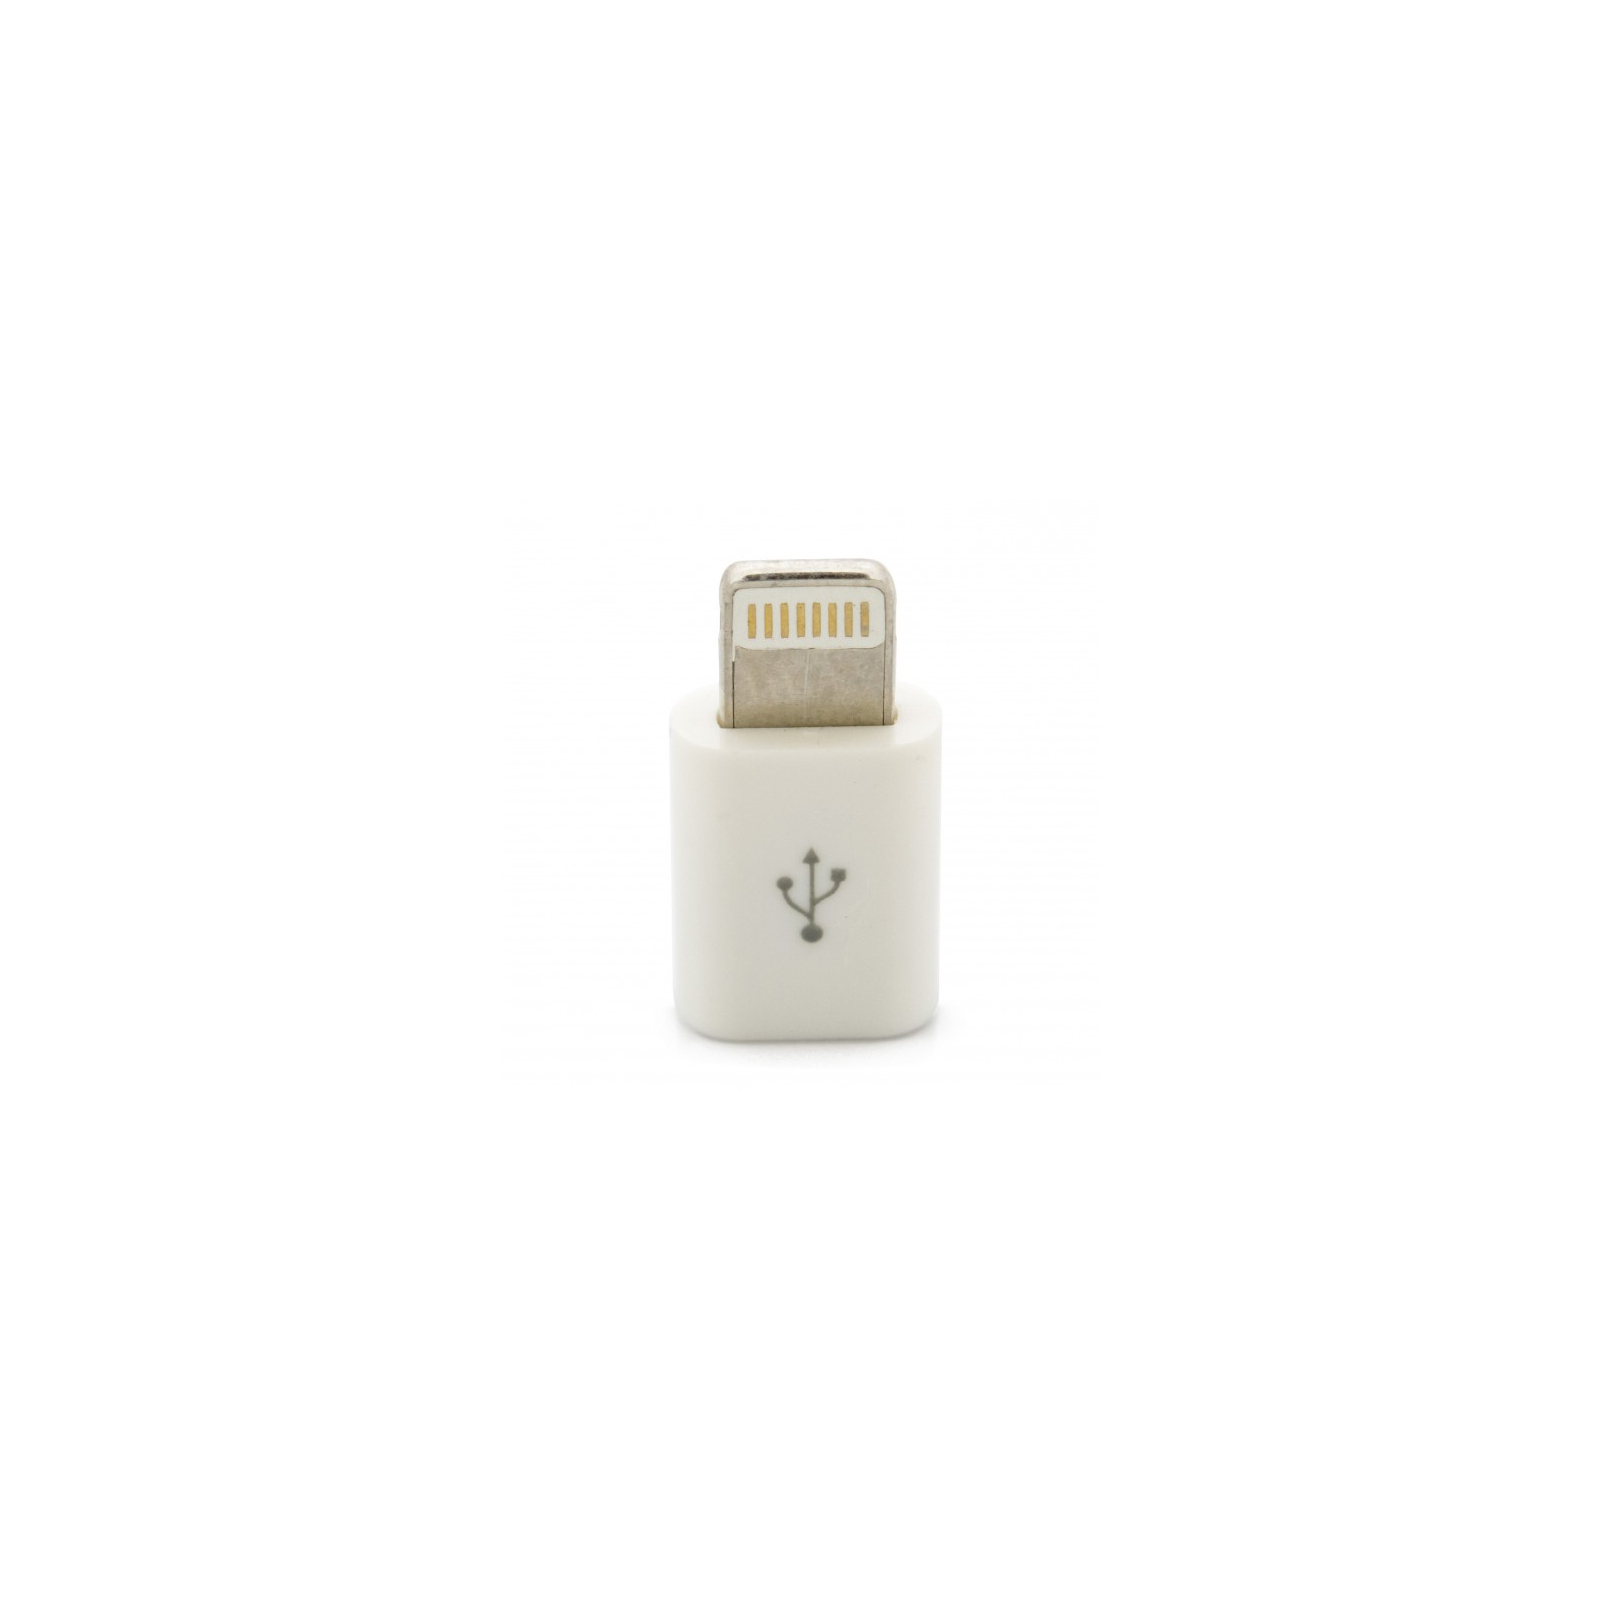 Переходник micro USB to Lightning Extradigital (KBA1648) изображение 2